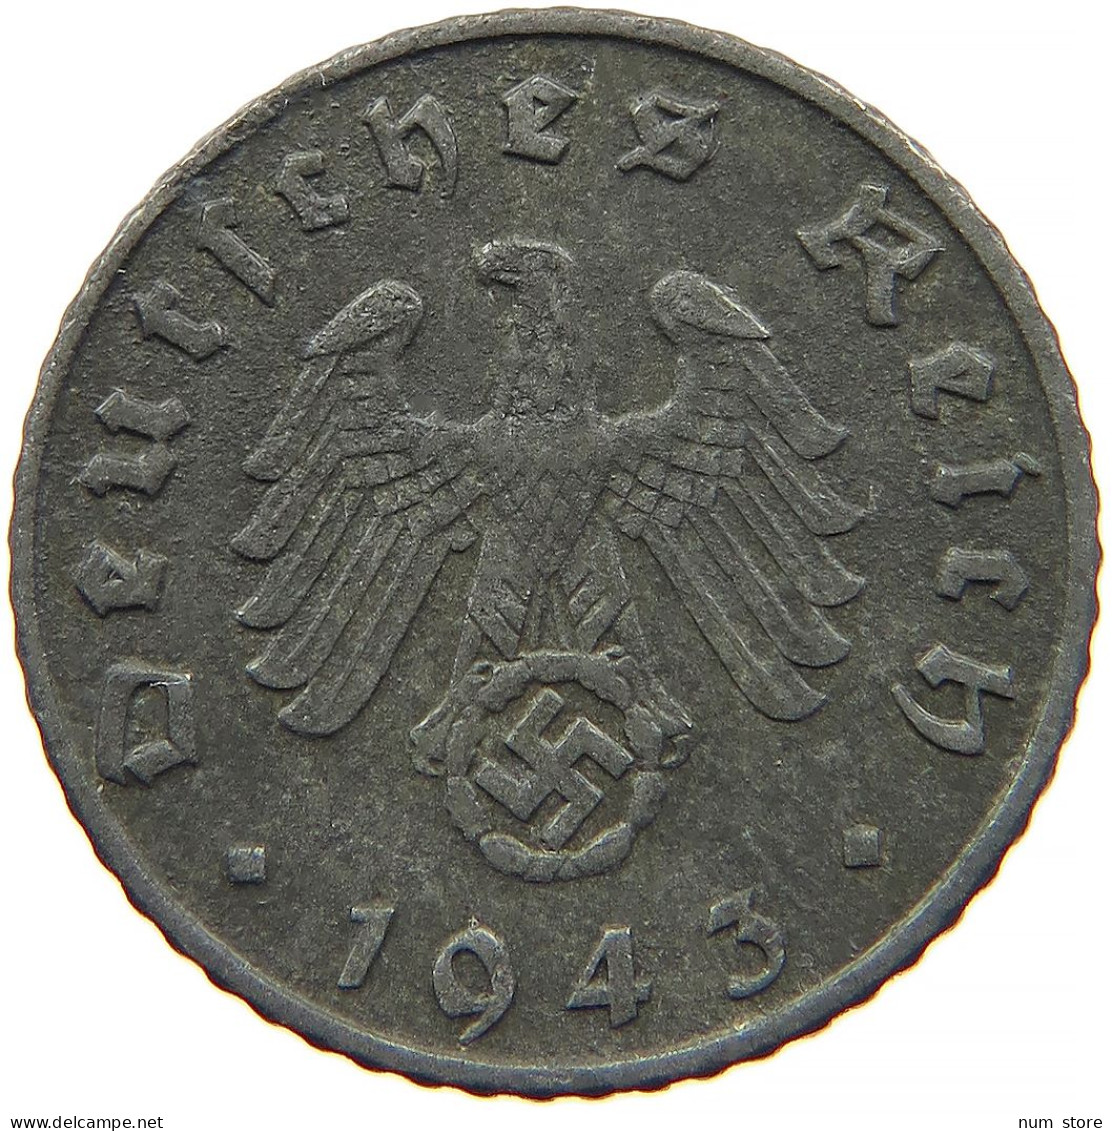 GERMANY 5 REICHSPFENNIG 1943 F #s091 0835 - 5 Reichspfennig